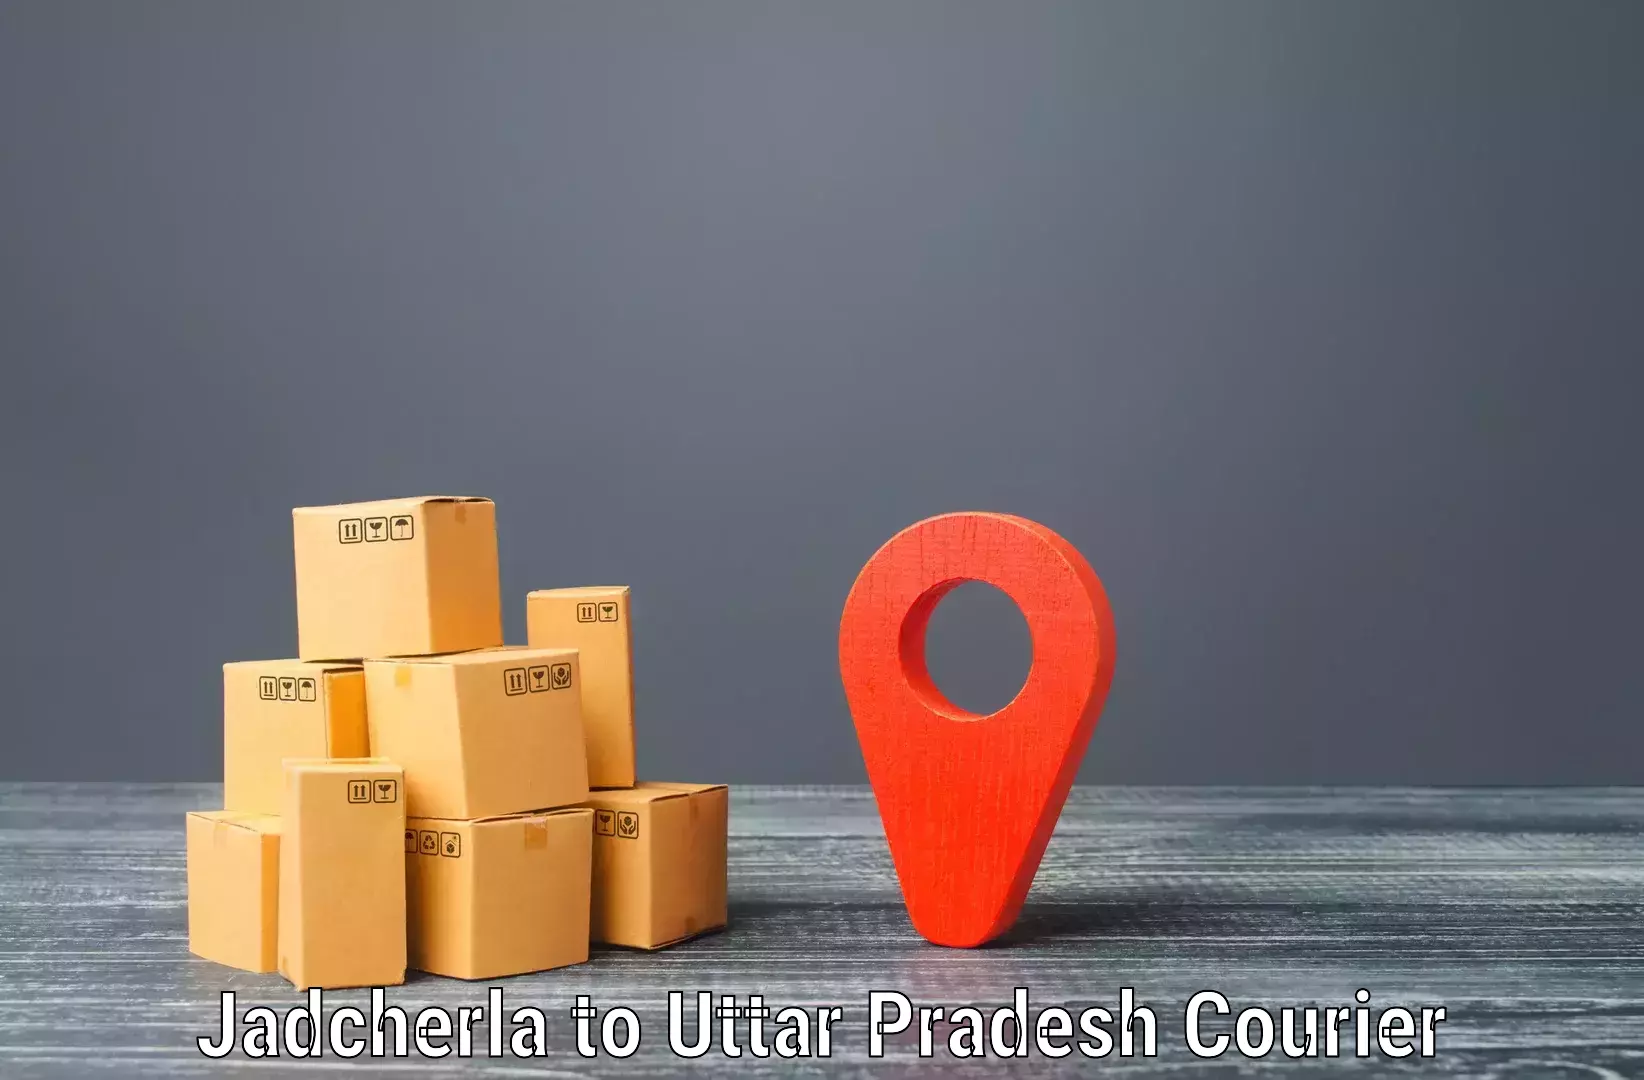 E-commerce shipping partnerships Jadcherla to Sirathu